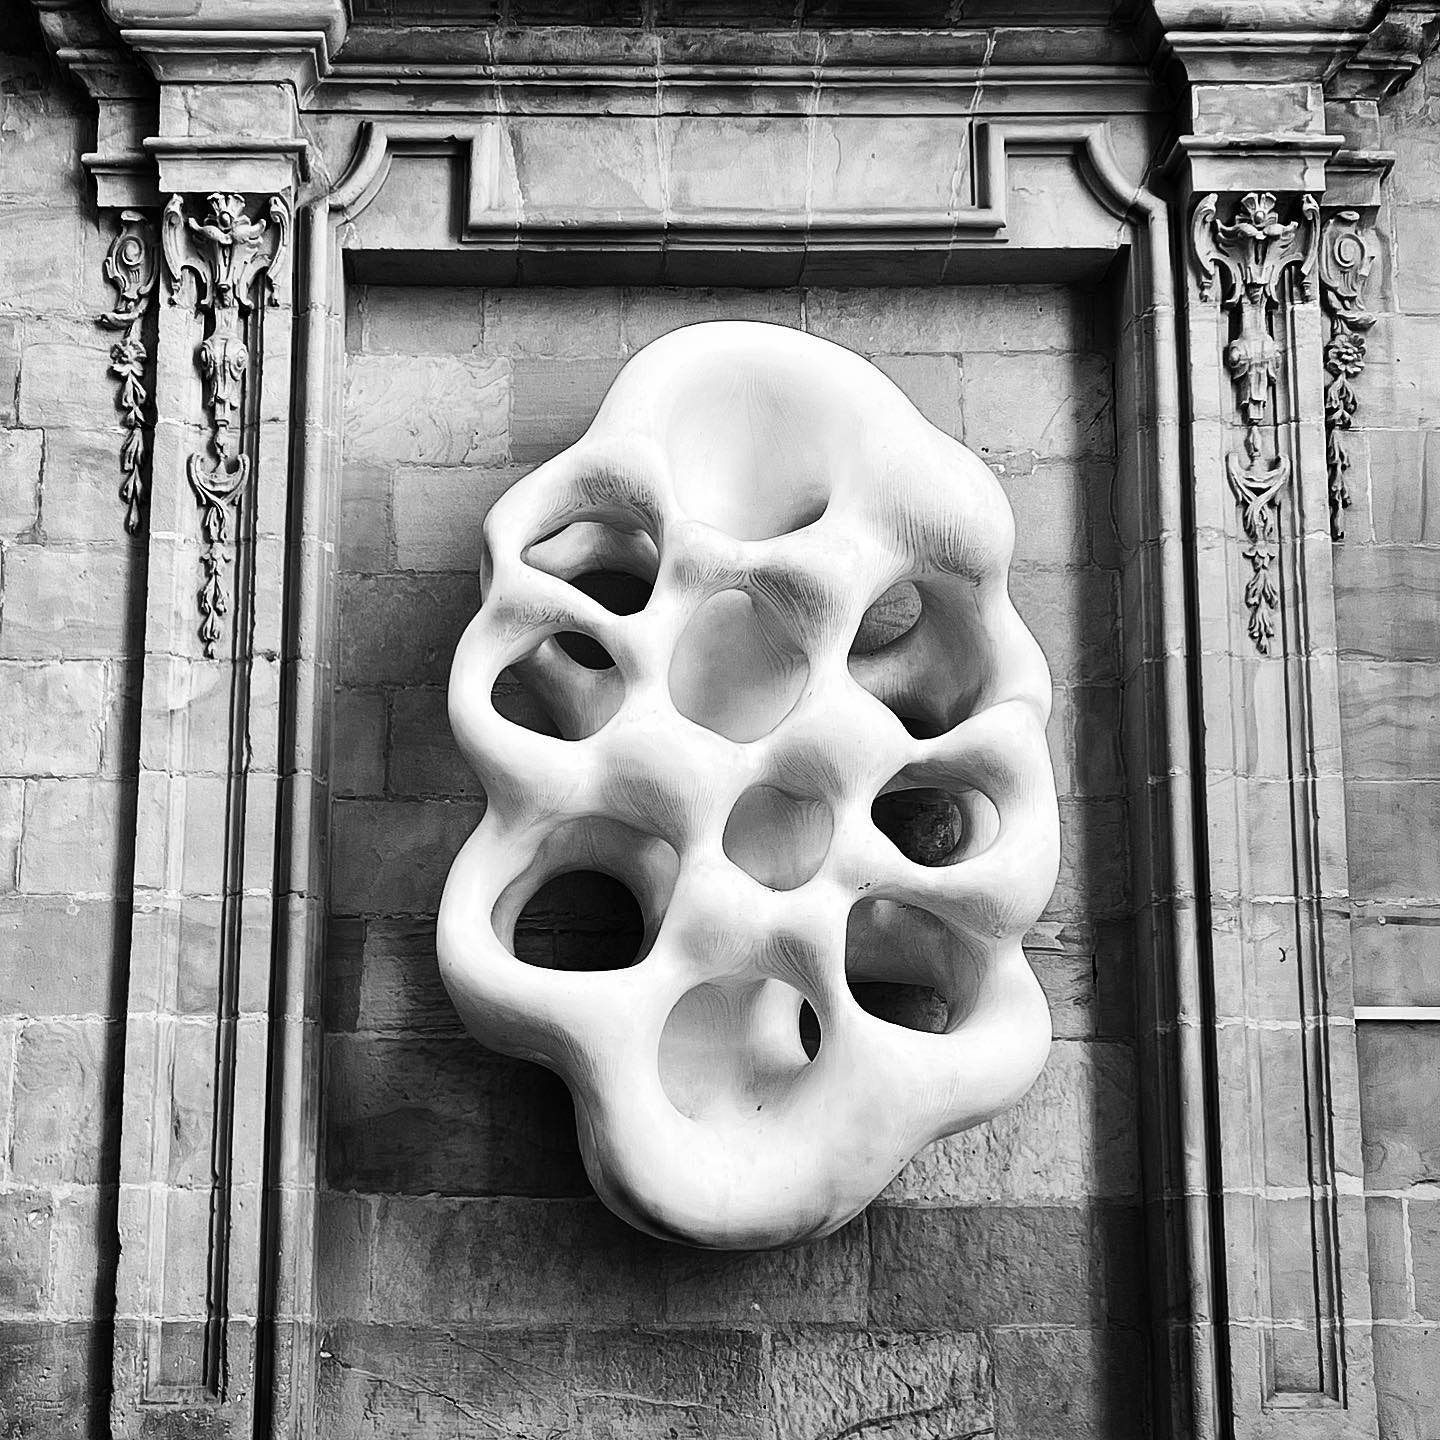 When old and new collide - La armonía del sonido by @MaximilianPelzmann
.
.
.
.
.
#sculpture #sansebastian #españa #escultura #picoftheday #instagood #amazing #cool #laarmoniadelsonido